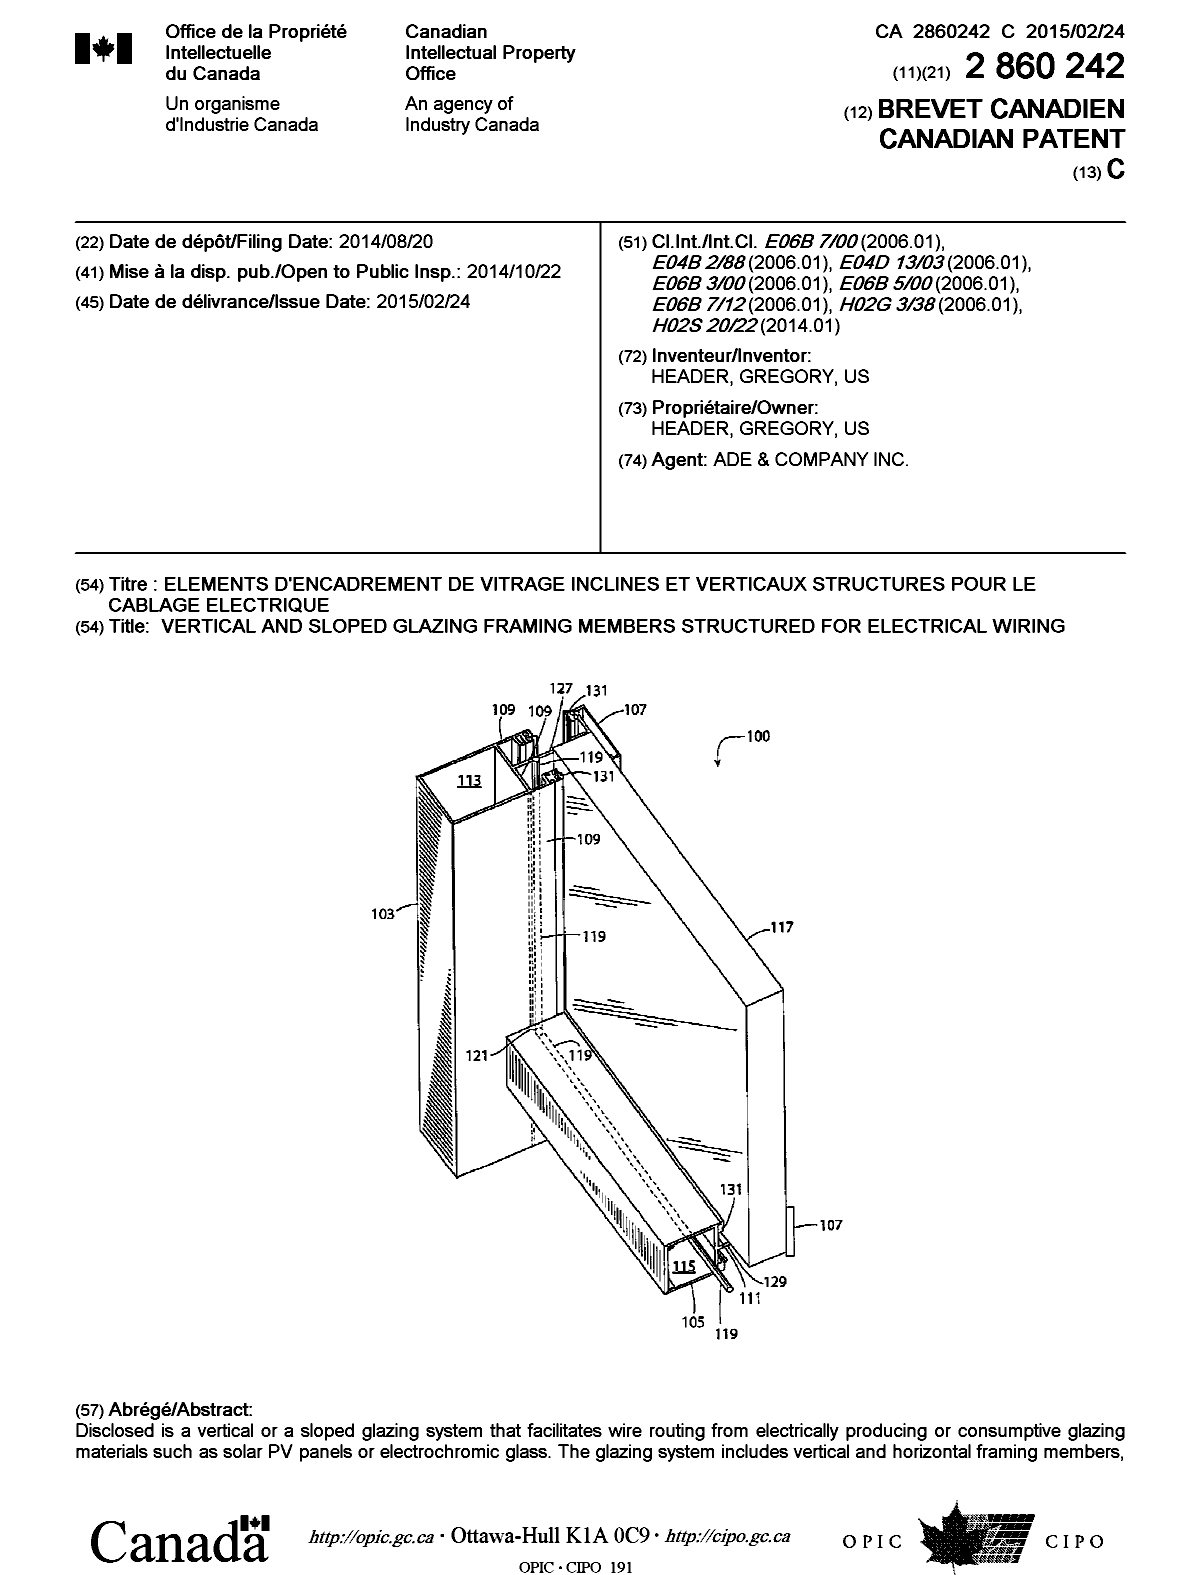 Document de brevet canadien 2860242. Page couverture 20141205. Image 1 de 2